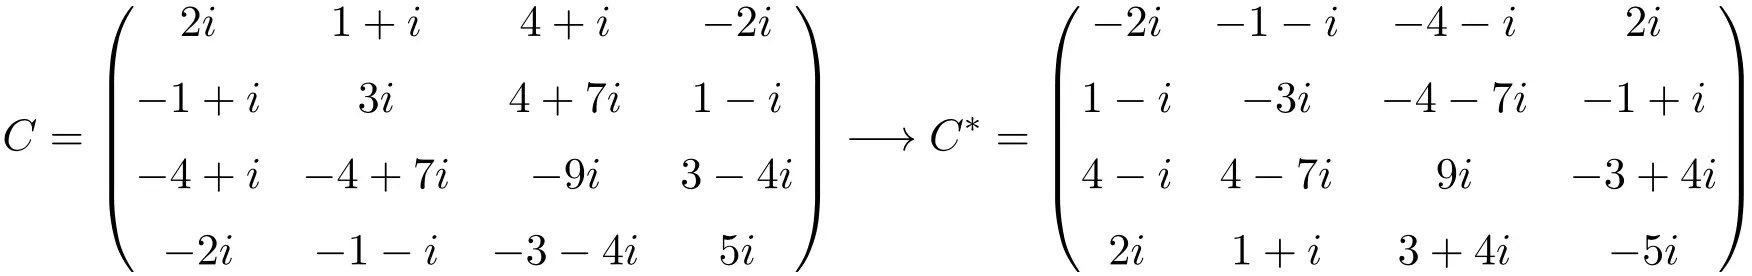 matrice antihermitiana o antihermitiana di dimensione 4x4